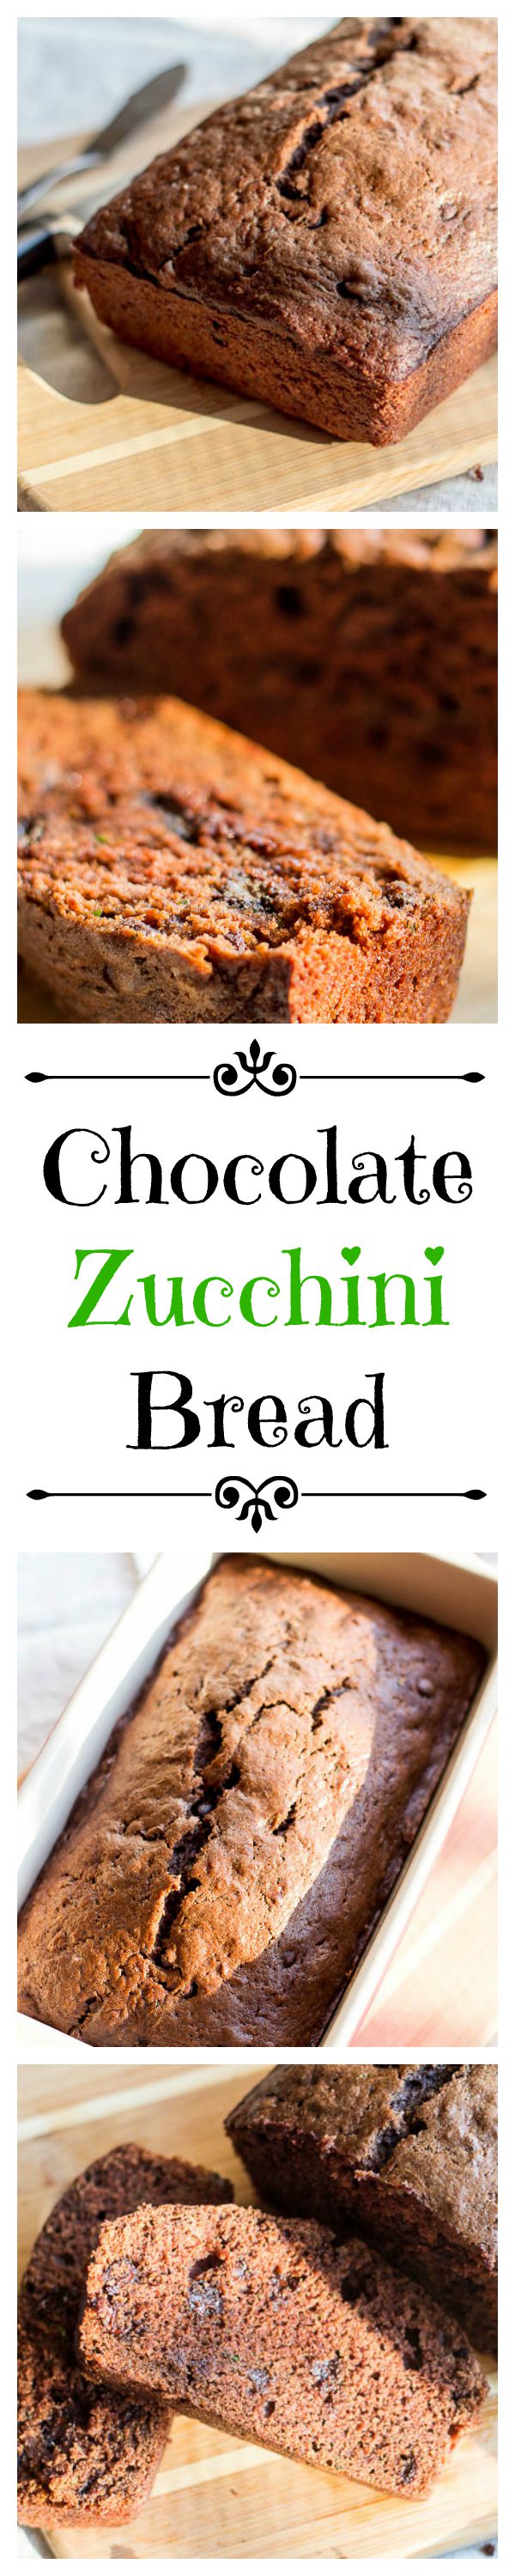 Chocolate Zucchini Bread | Catz in the Kitchen | catzinthekitchen.com | #bread #fall #zucchini